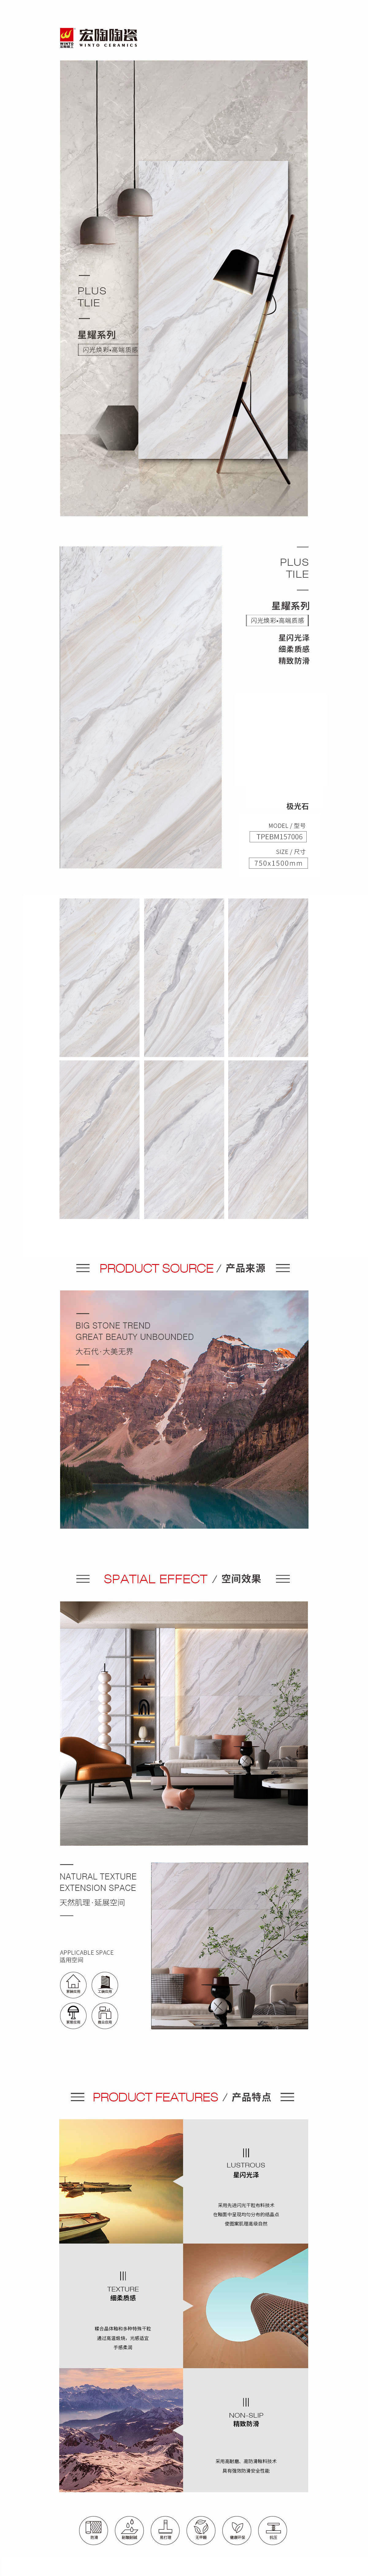 TPEBM157006极光石陶瓷大板详细介绍了陶瓷大板的图片、规格、特点等，是佛山瓷砖，是蓝冠注册陶瓷品牌-中国陶瓷一线品牌。